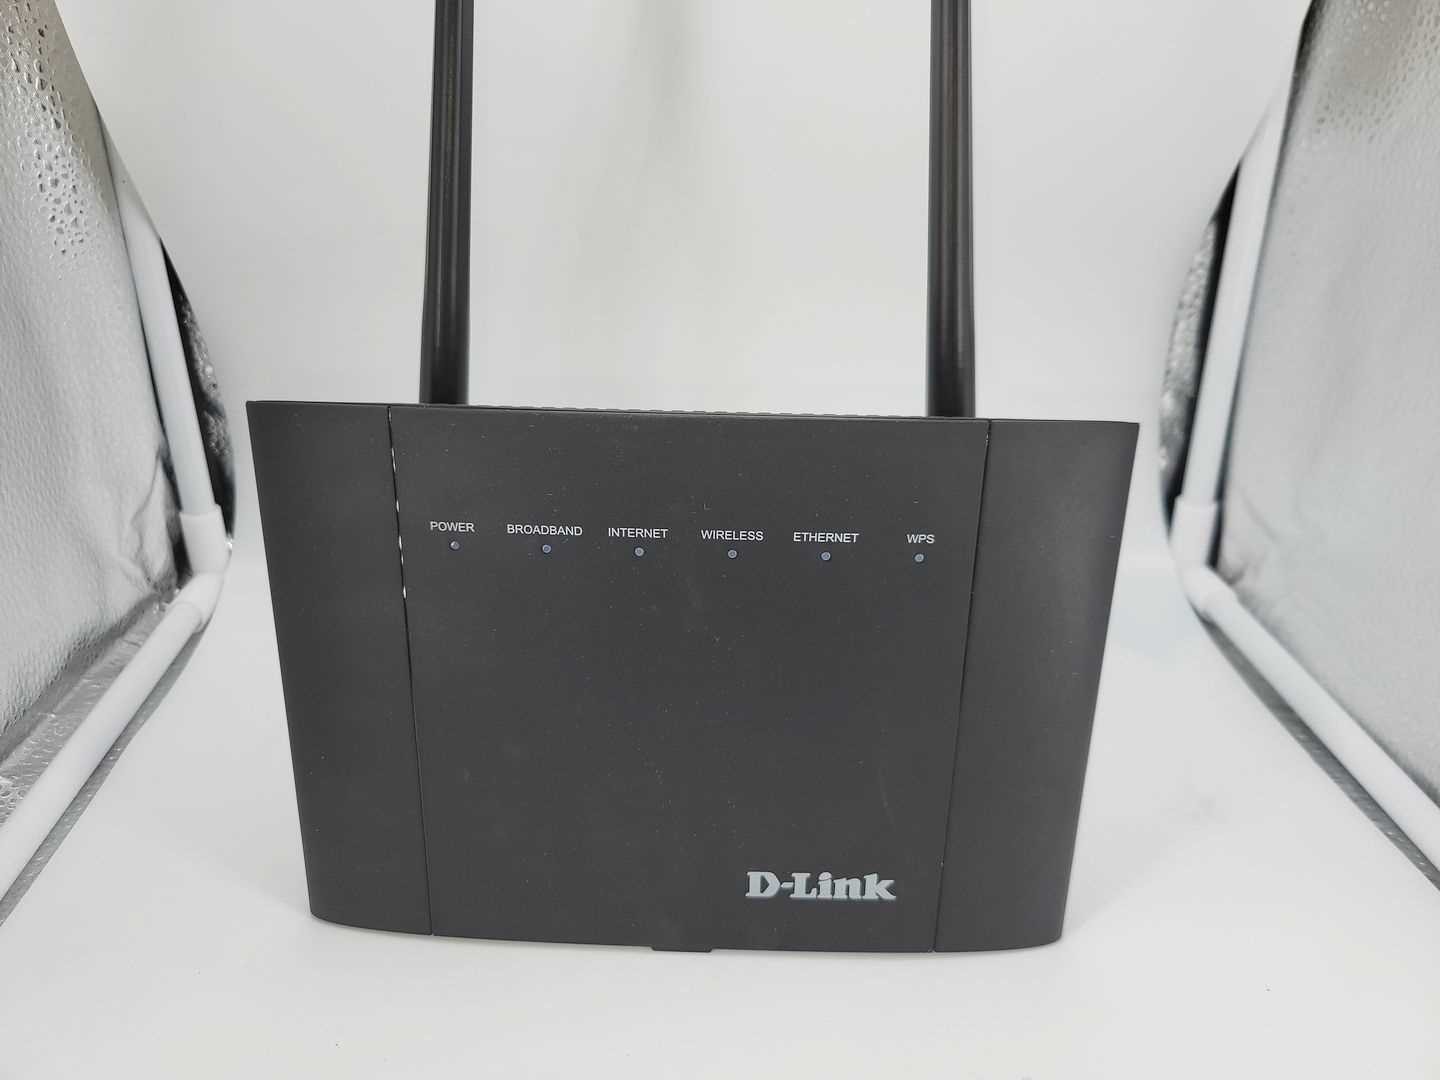 Los 131 - Router D-Link DSL-3788